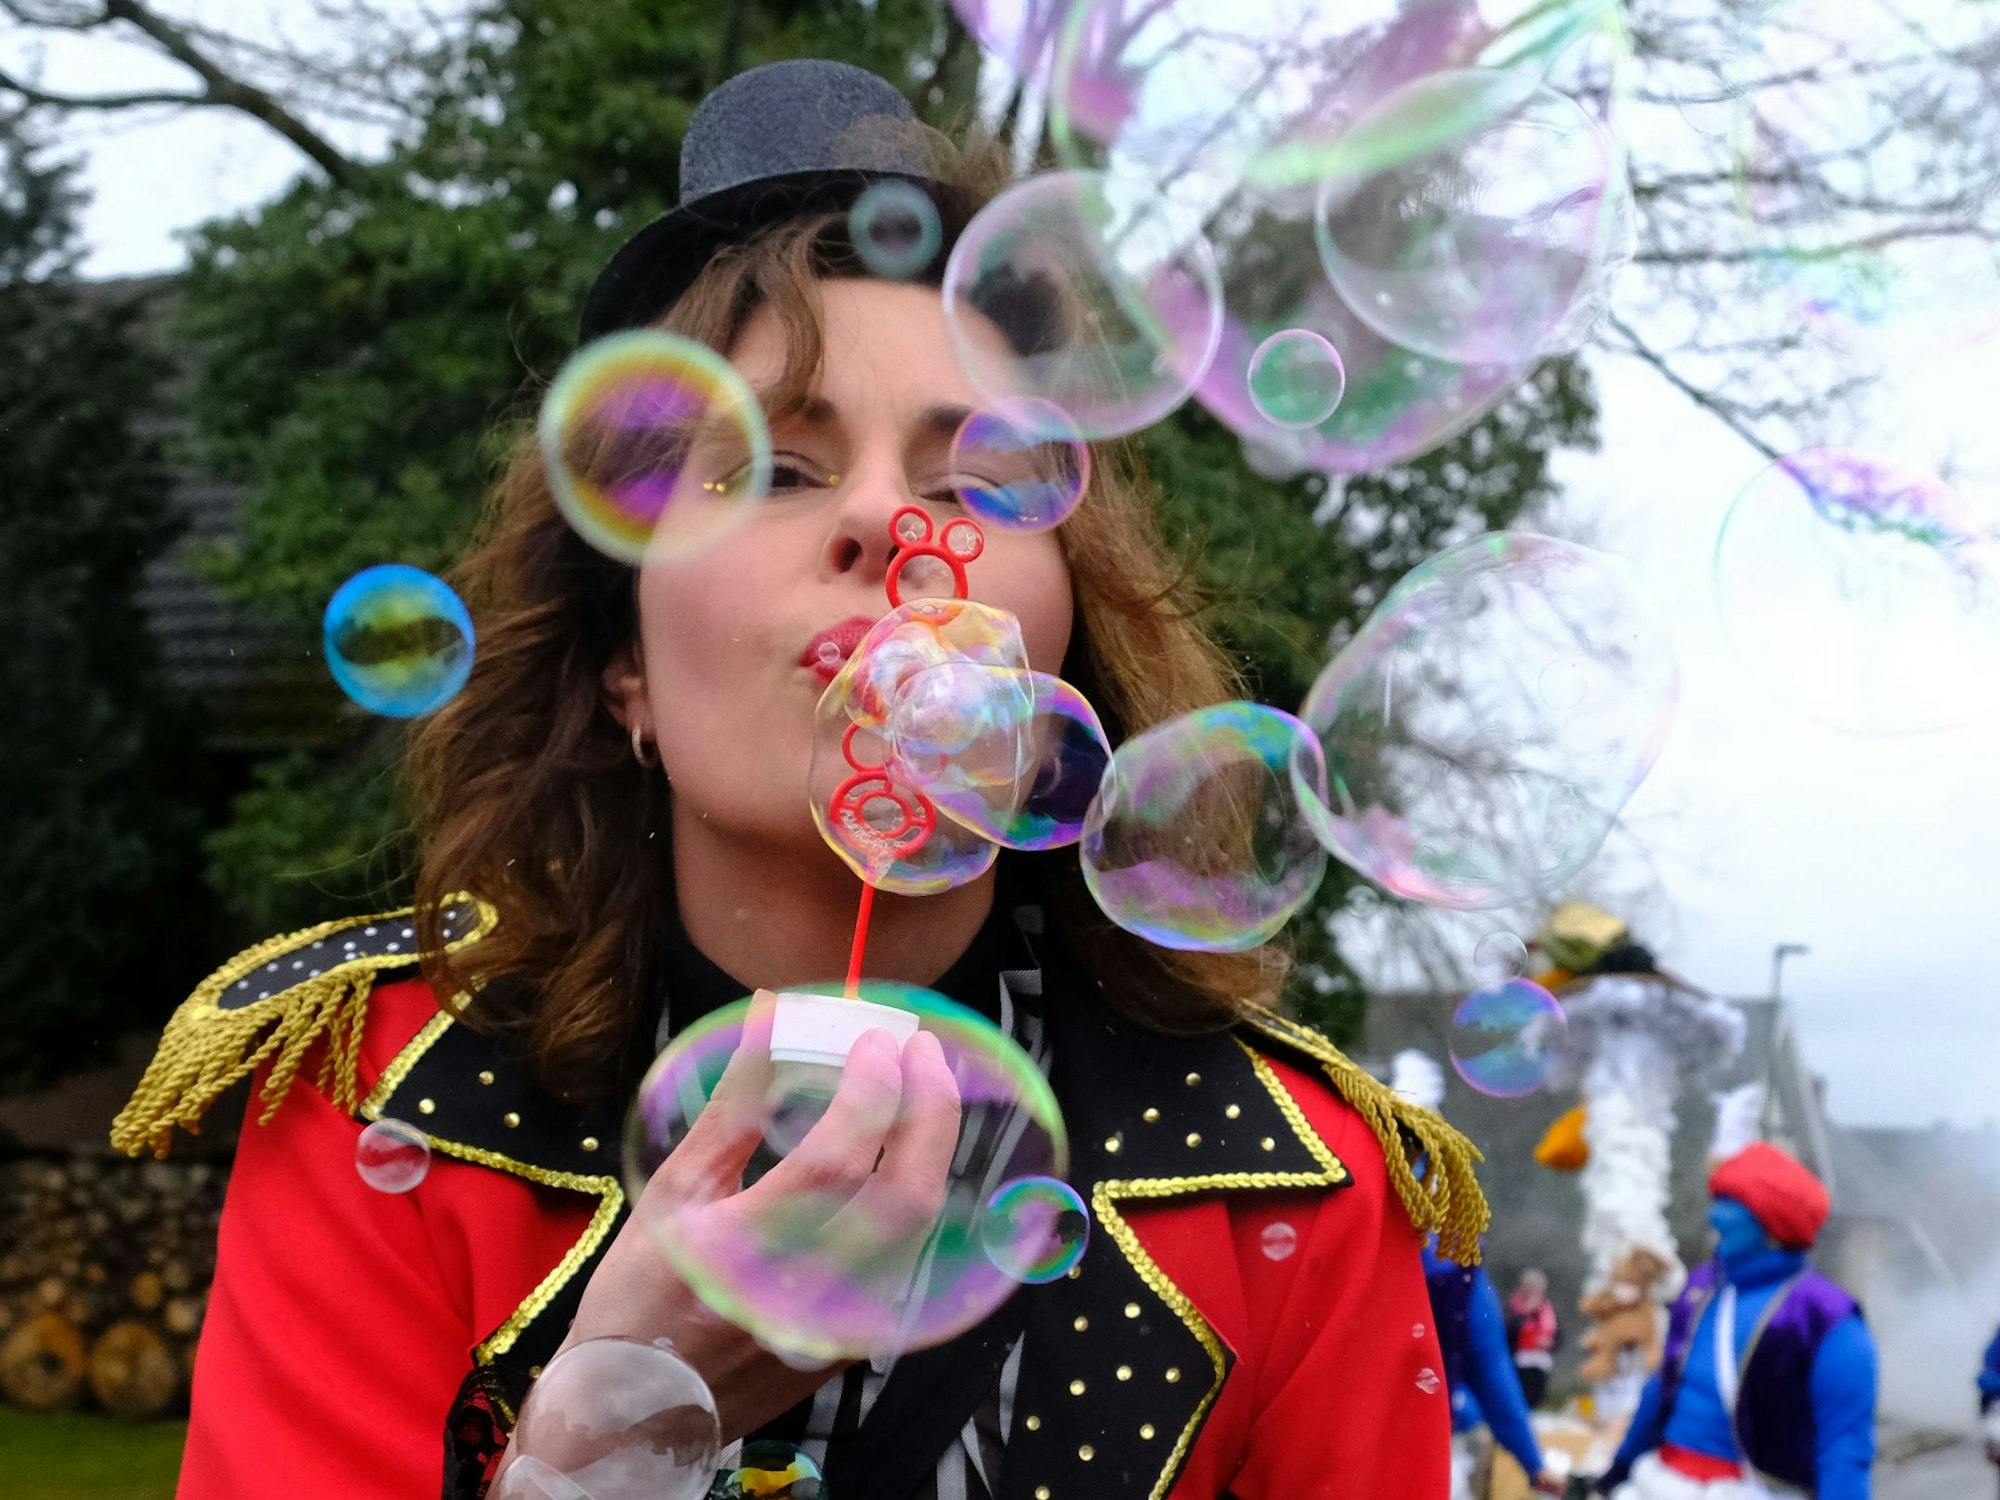 Herrlich jeck: Seifenblasen statt Konfetti gab's beim Karnevalszug der Morhahne in Herhahn und Morsbach.